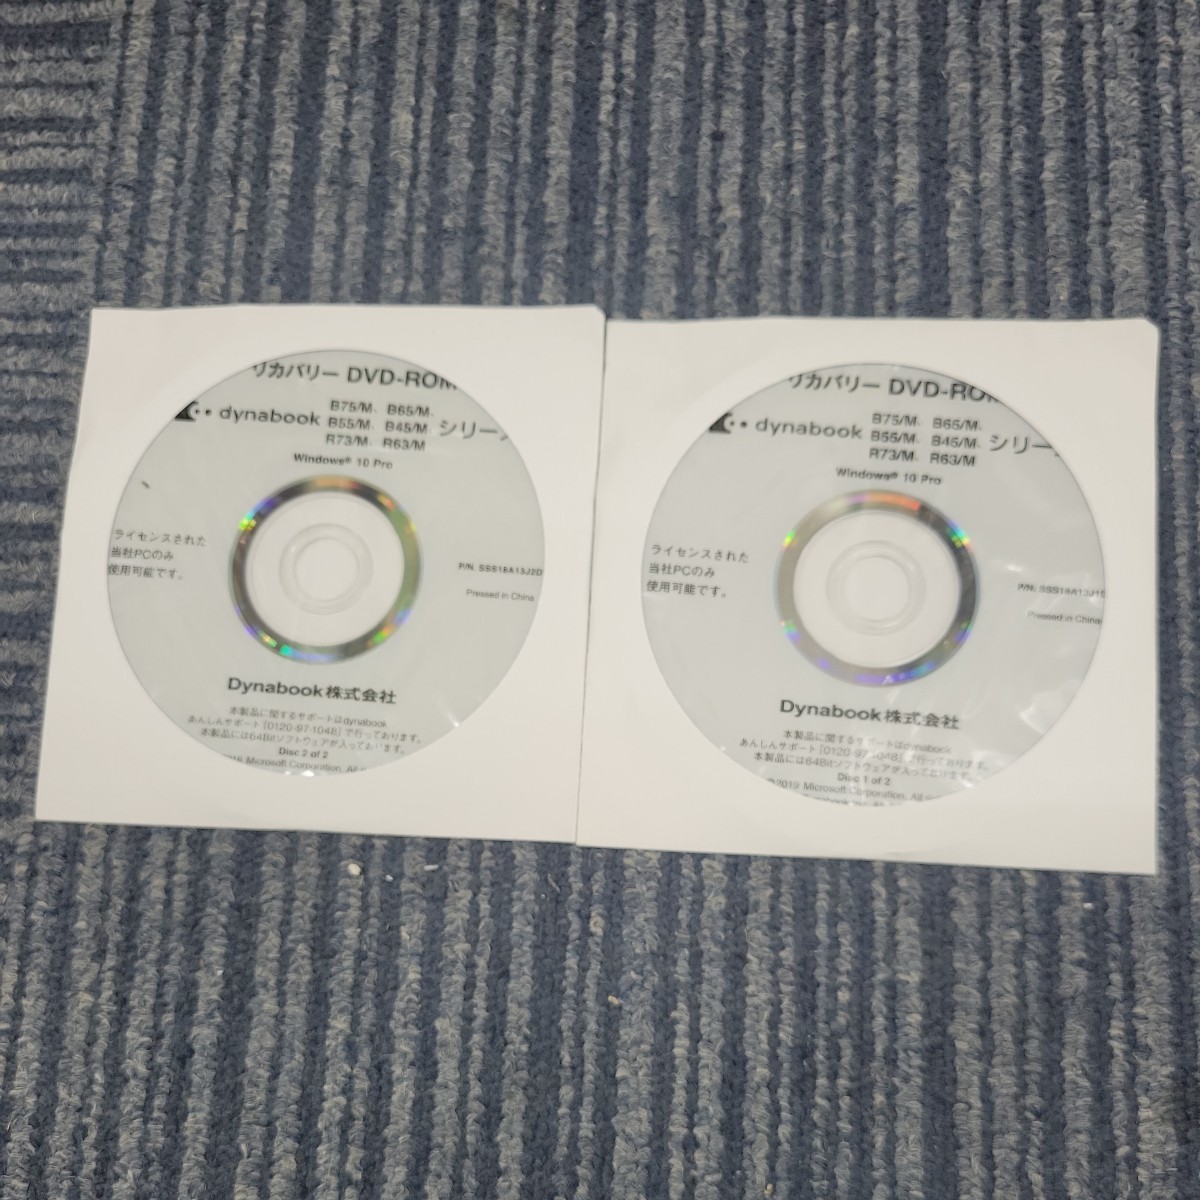 【2枚セット】東芝 TOSHIBA dynabook B75/M B65/M B55/M B45/M R73/M R63/M Win10pro リカバリーディスク DVD-ROM SSS18A13J P02300_画像1